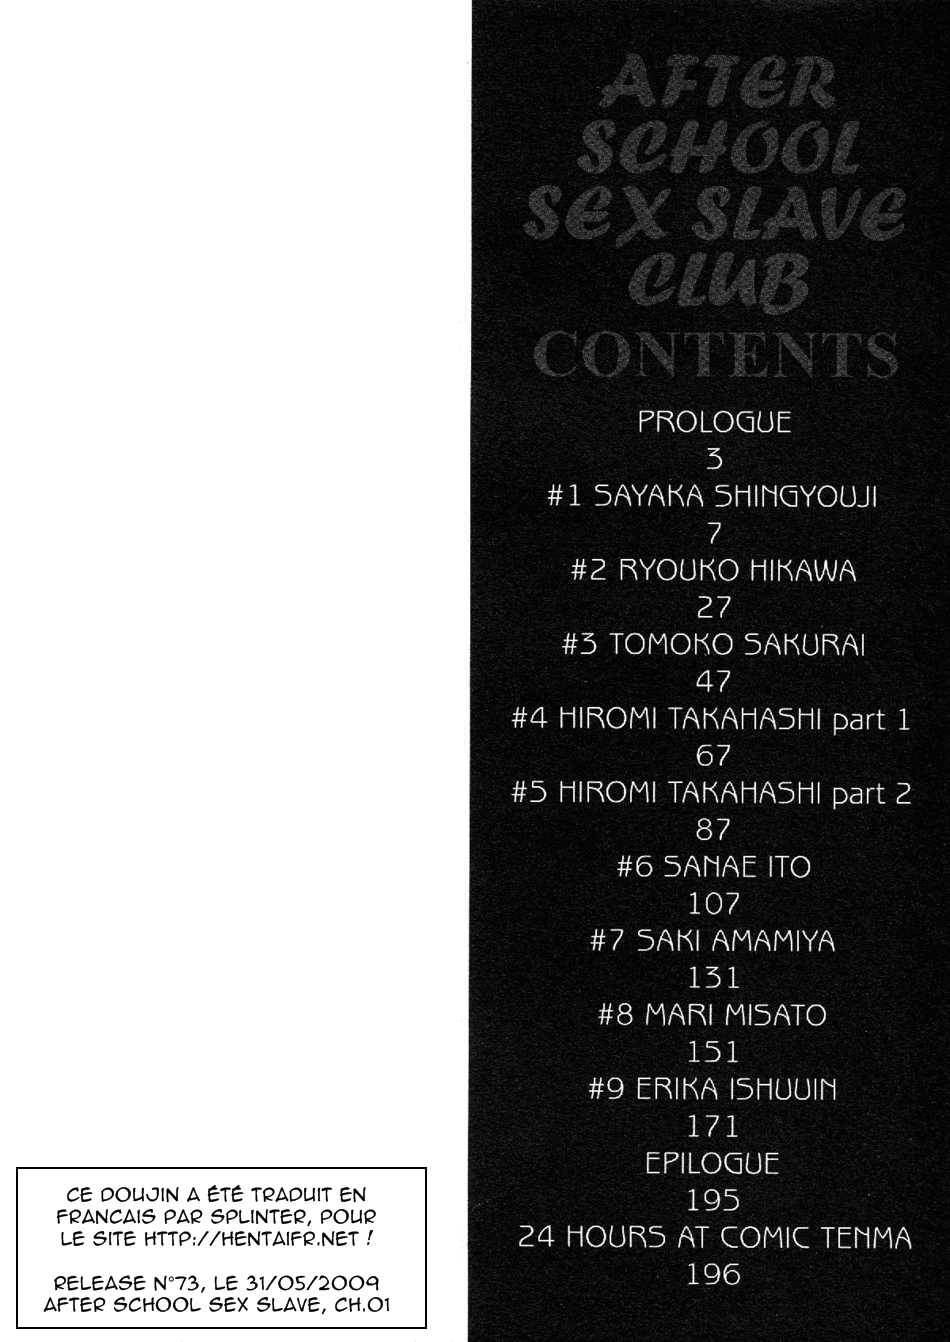 Sex Slave Club Ch 01 (french) 